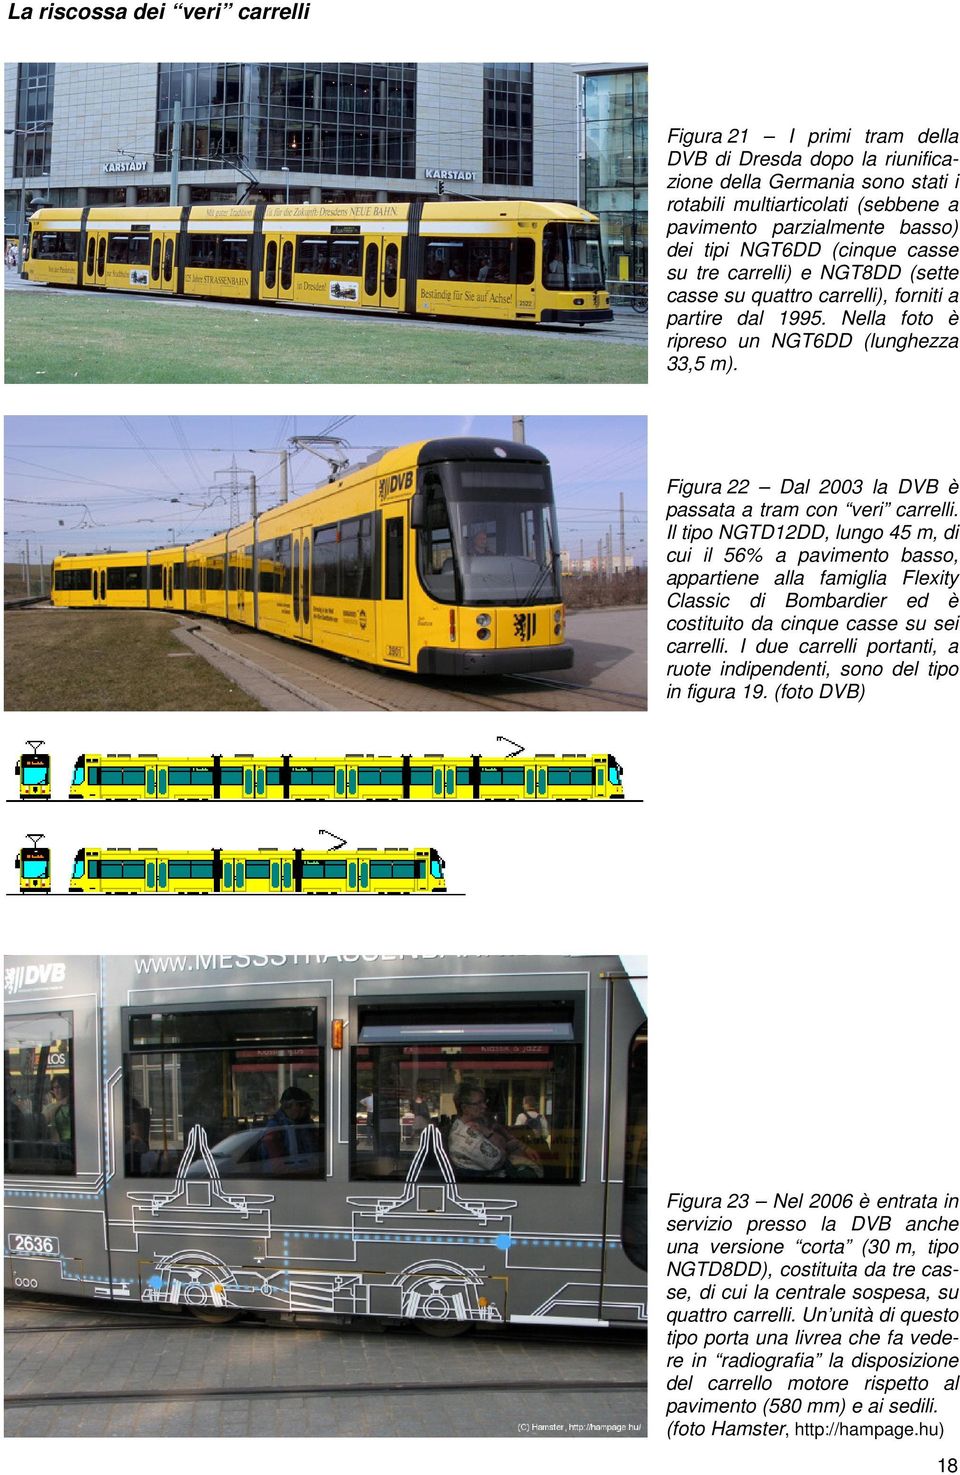 Figura 22 Dal 2003 la DVB è passata a tram con veri carrelli.